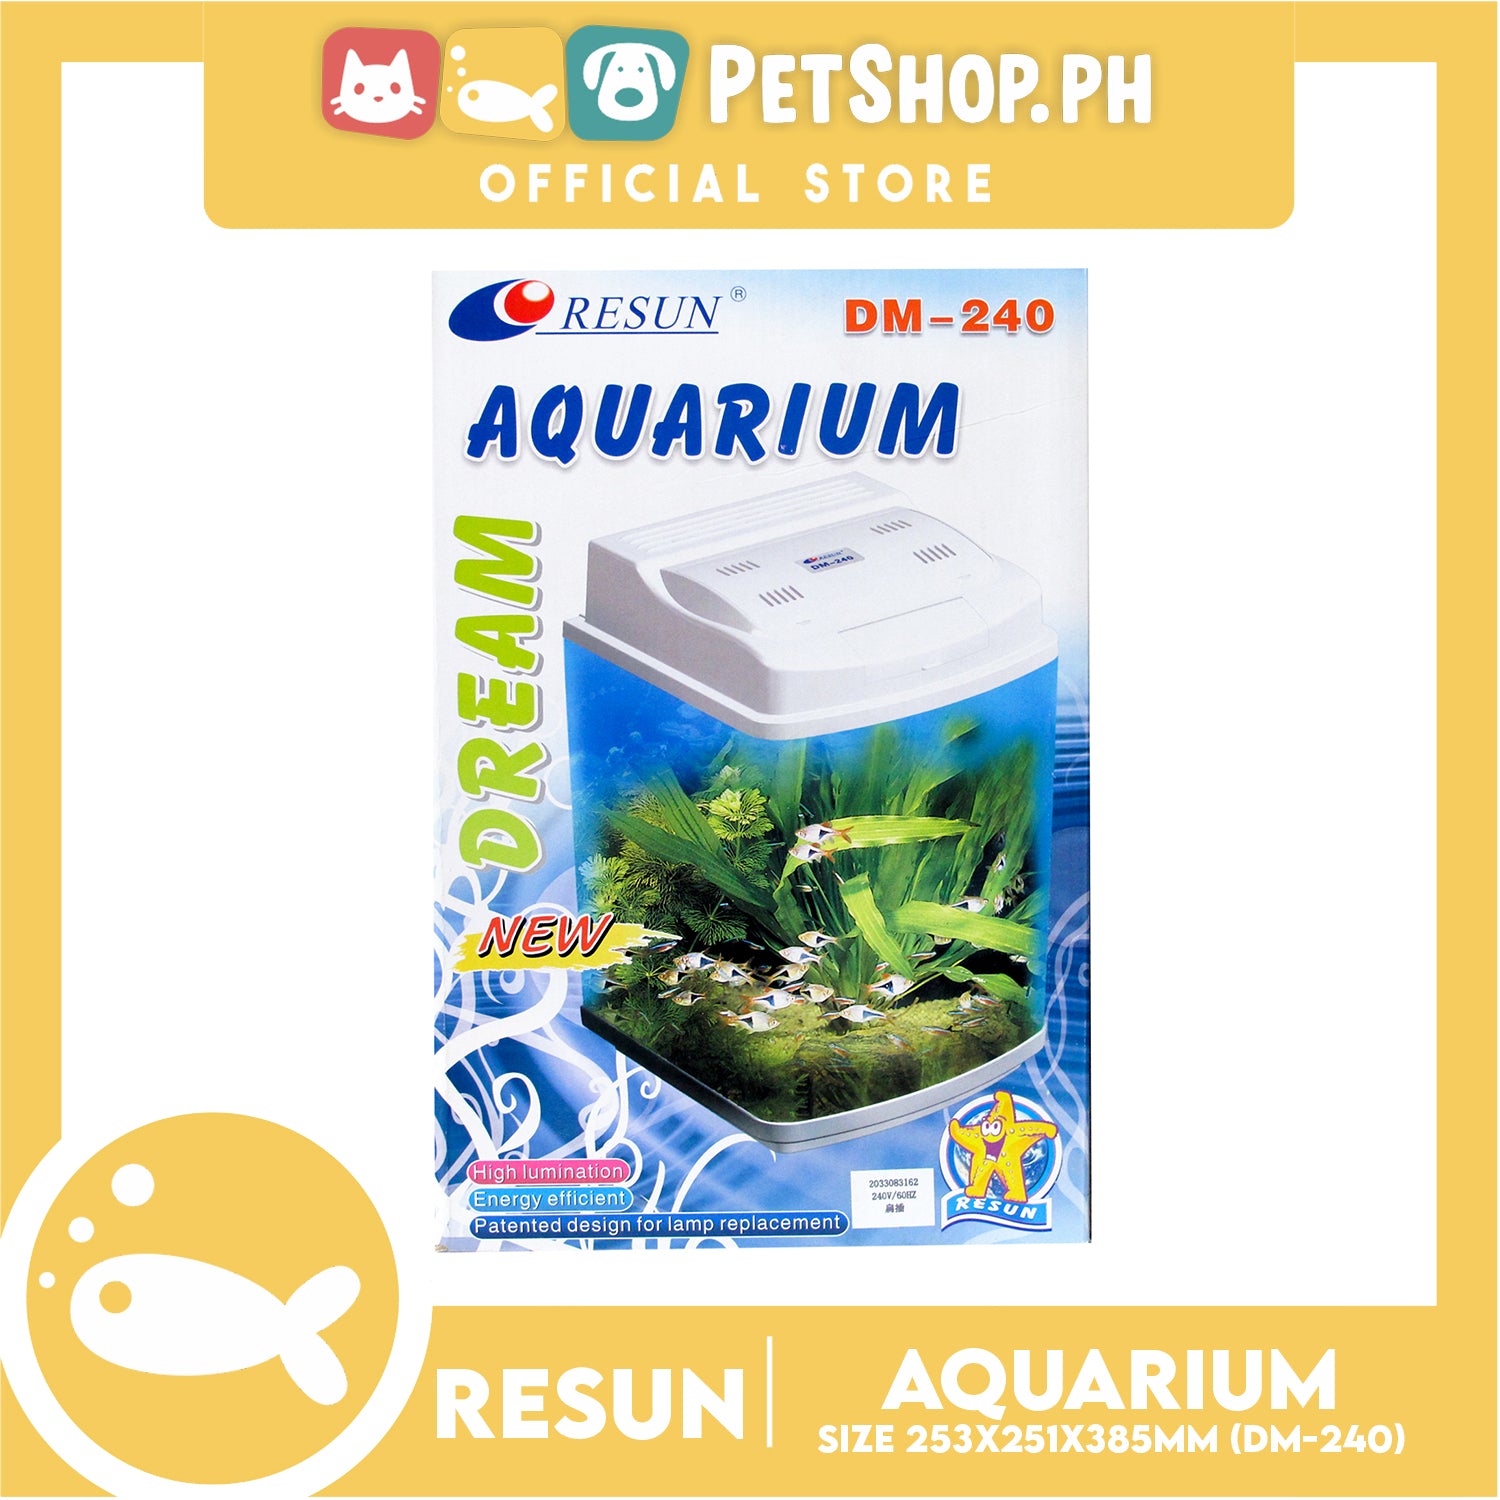 dream aquarium add fish